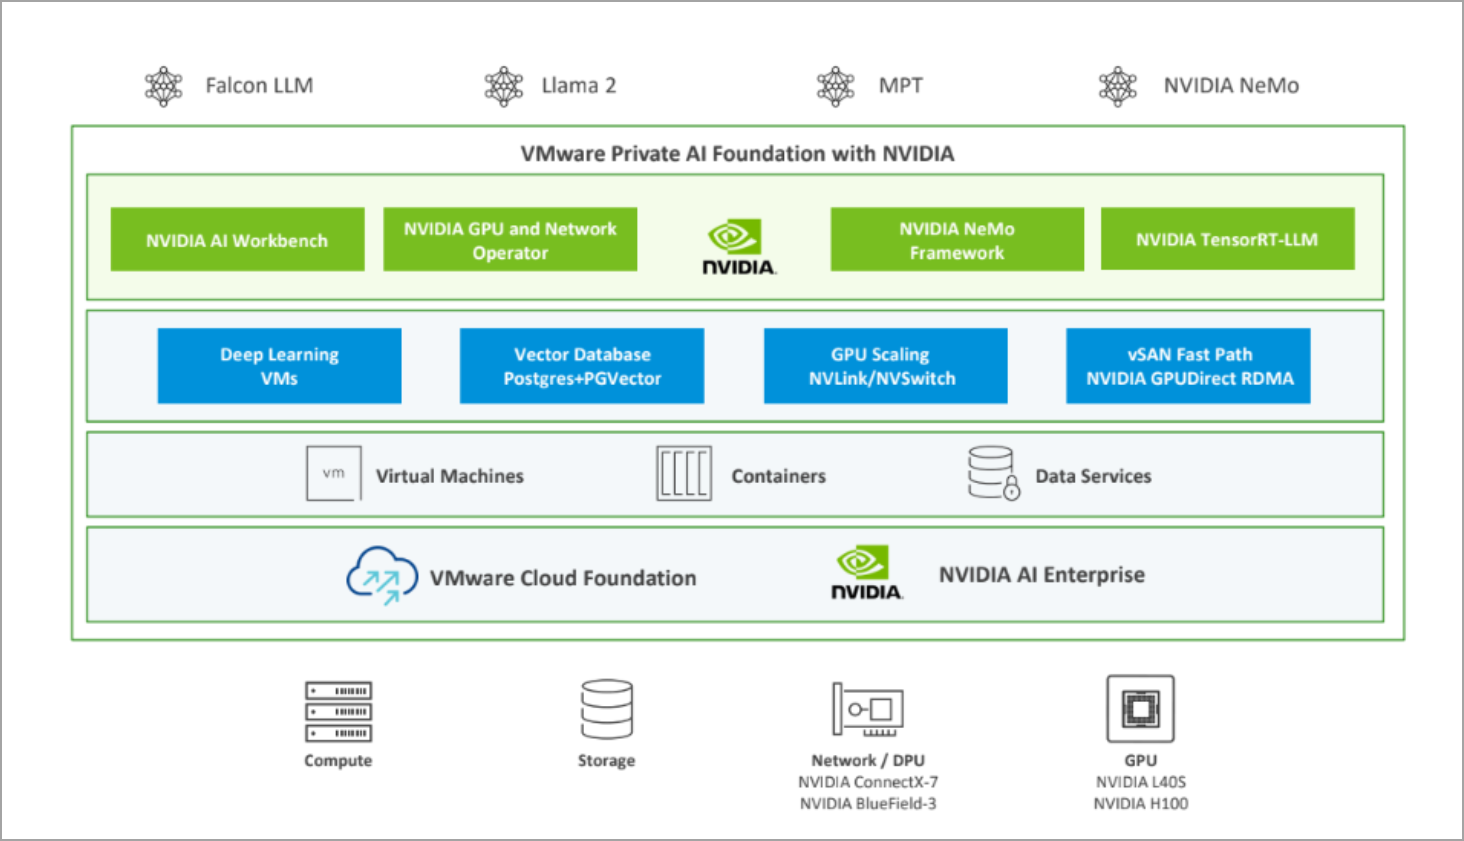 VMware Private AI Foundation with NVIDIA